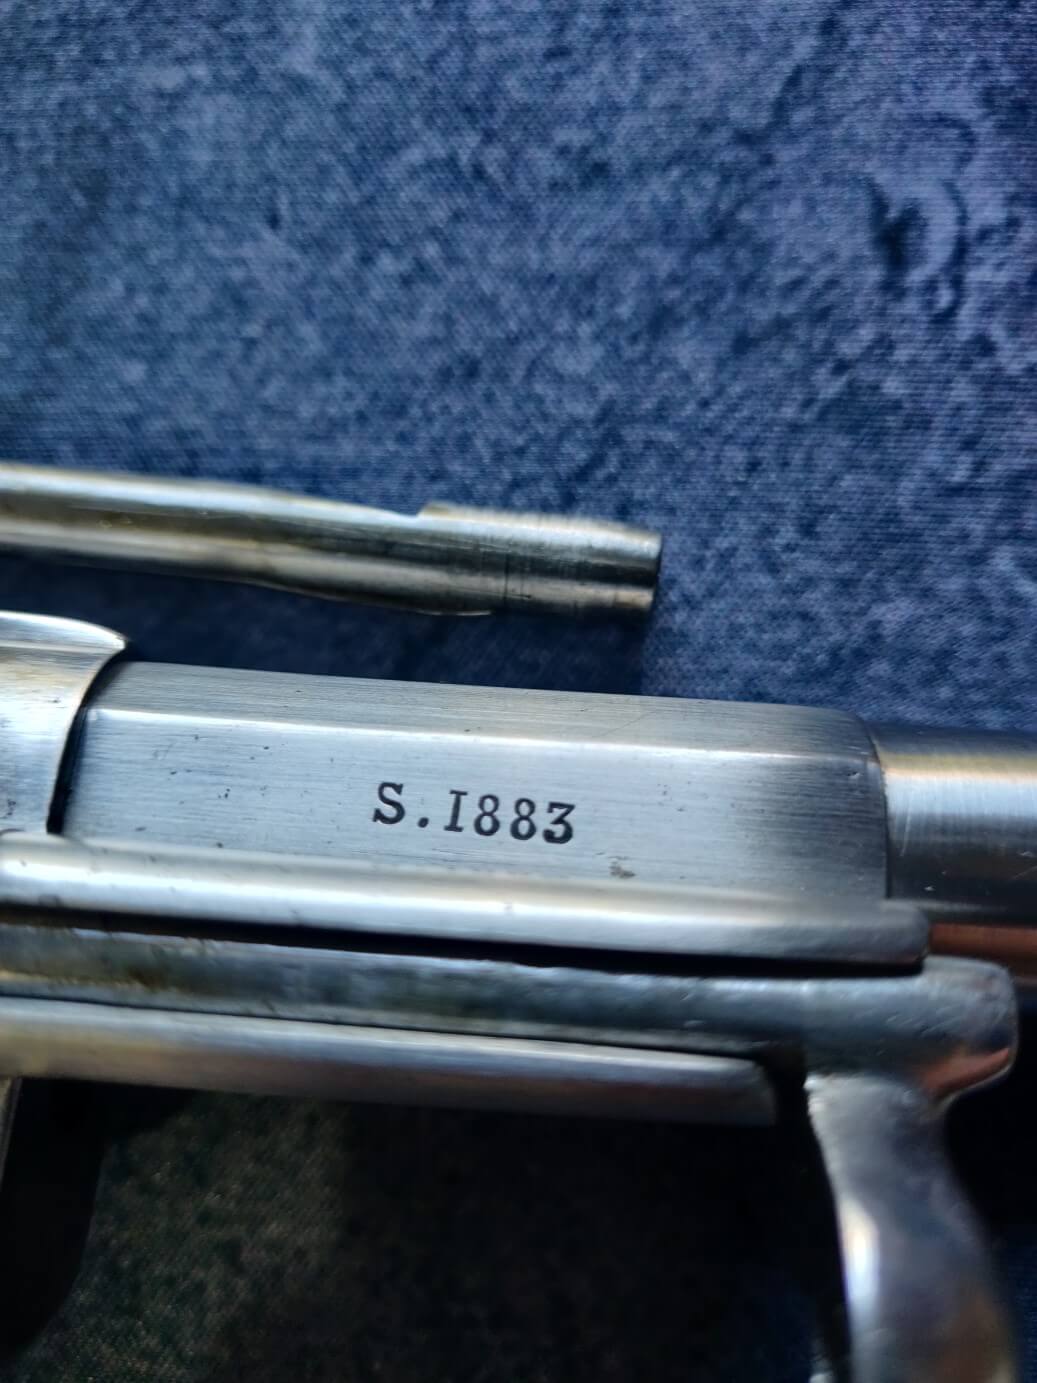 revolvers modèle 1873 avec plaquettes gravées